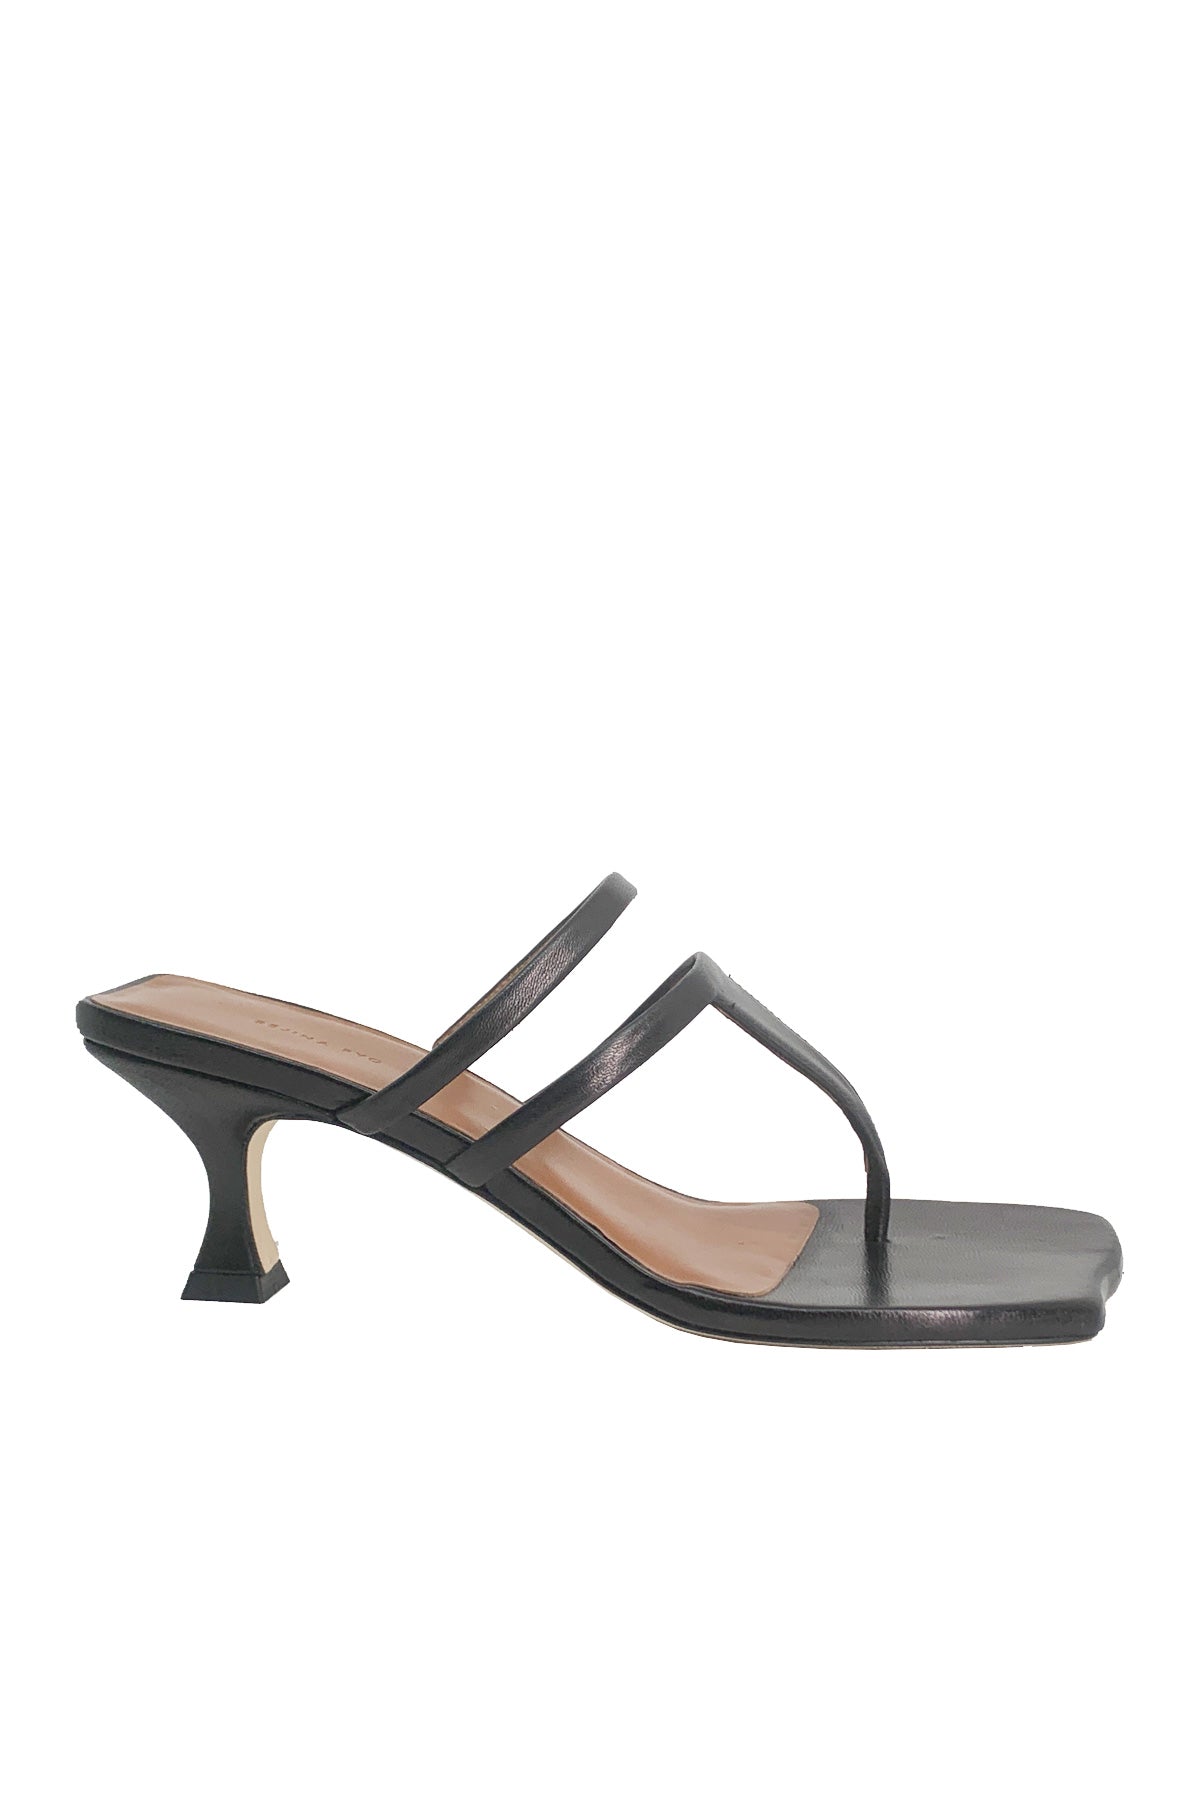 Allie Sandals in Black - shop-olivia.com